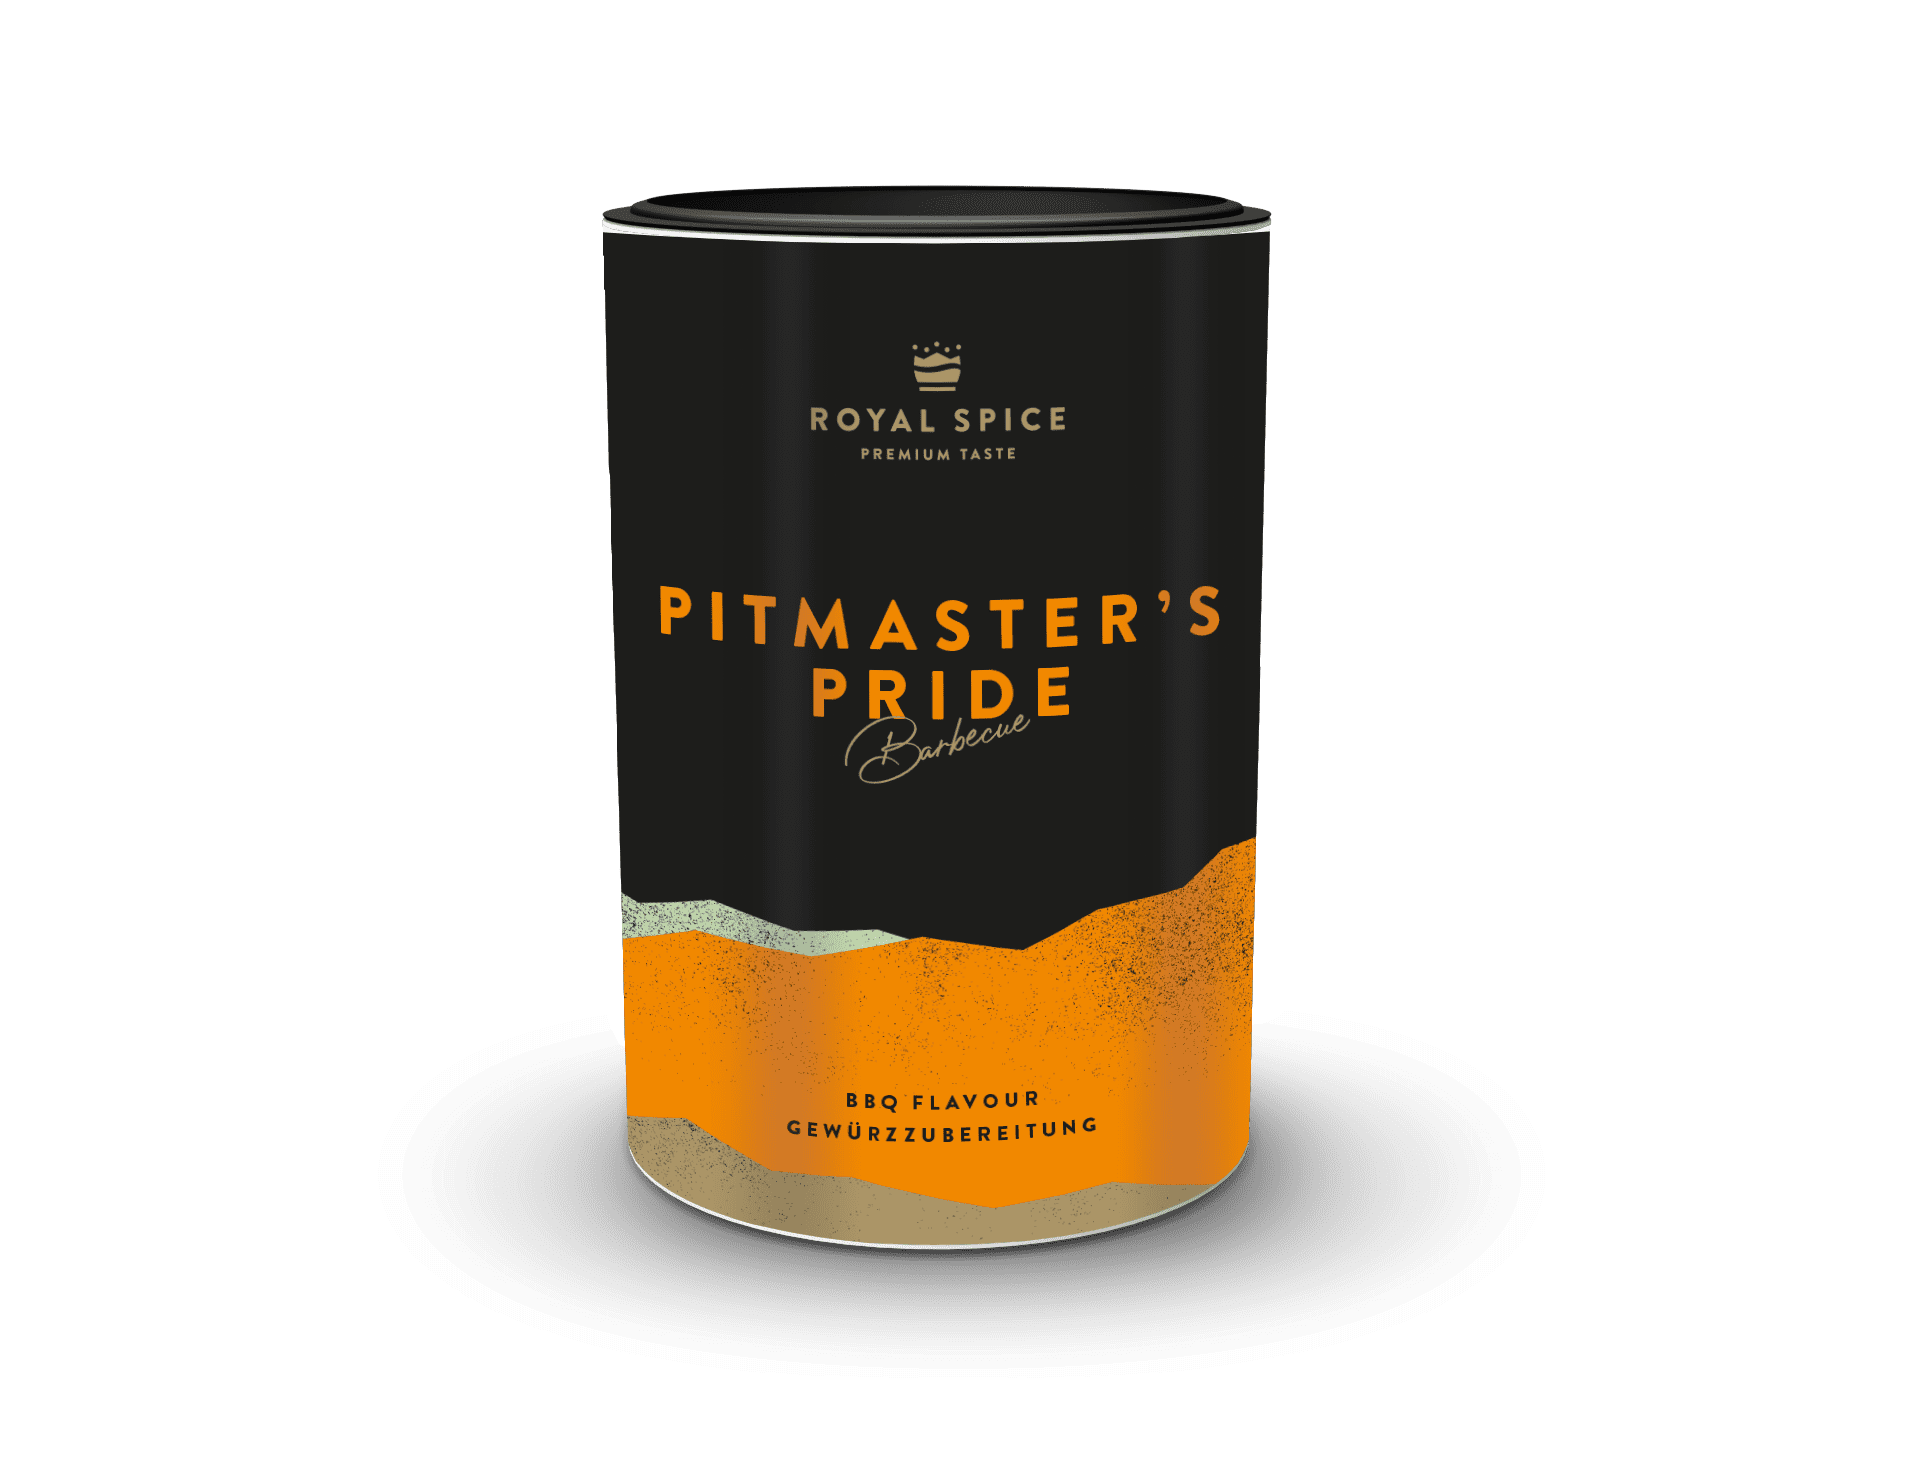 Pitmasters Pride BBQ und Grillgewürz